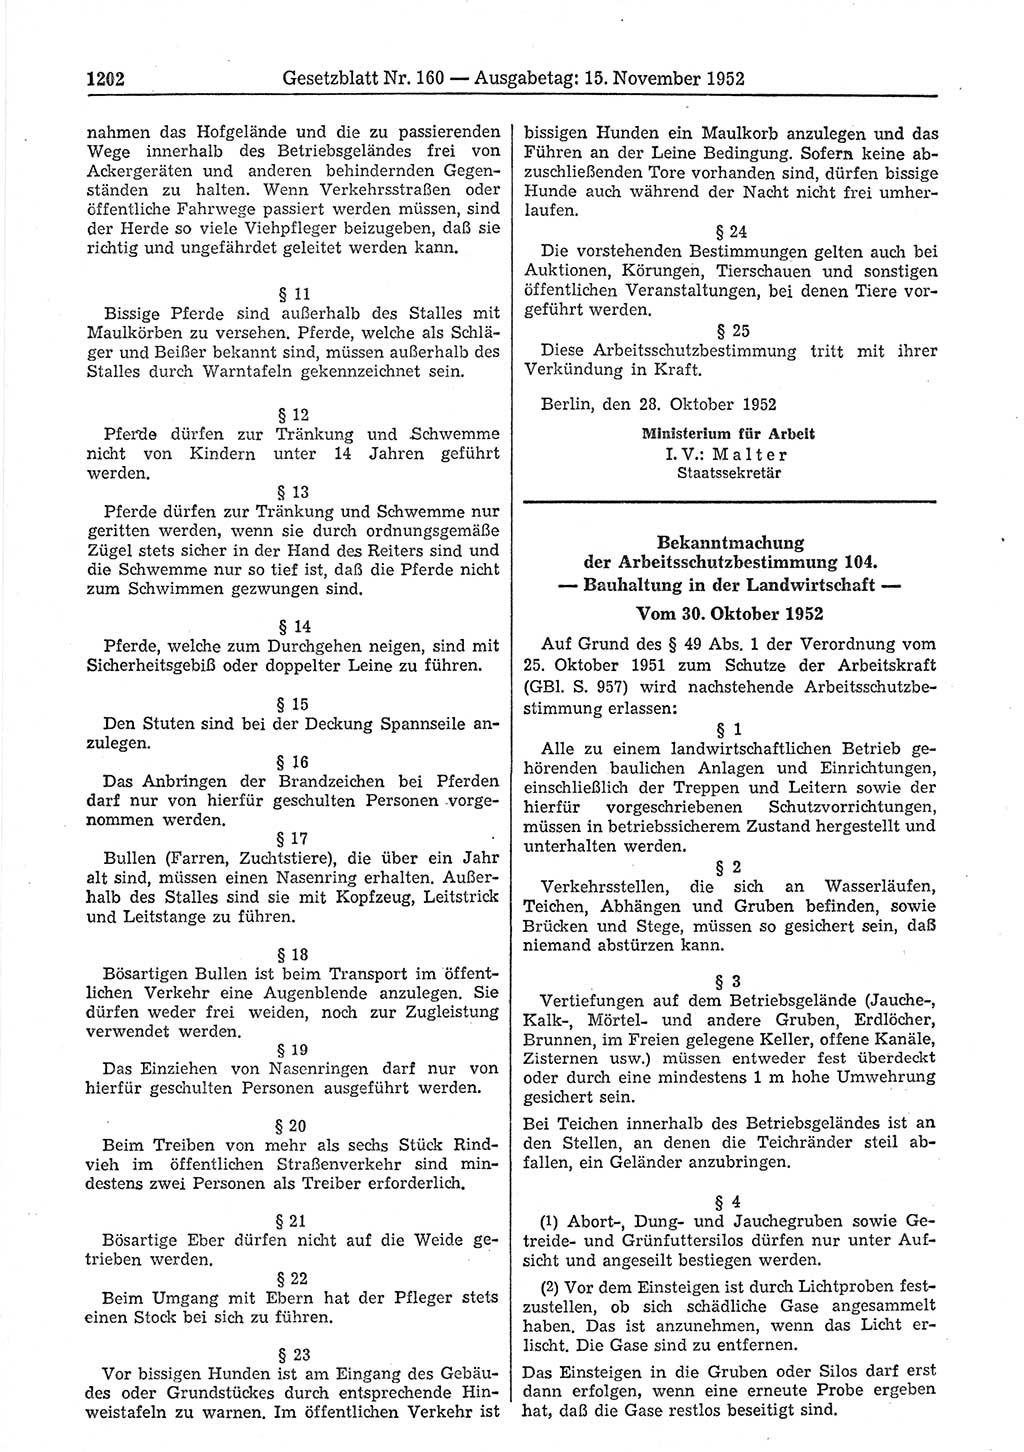 Gesetzblatt (GBl.) der Deutschen Demokratischen Republik (DDR) 1952, Seite 1202 (GBl. DDR 1952, S. 1202)